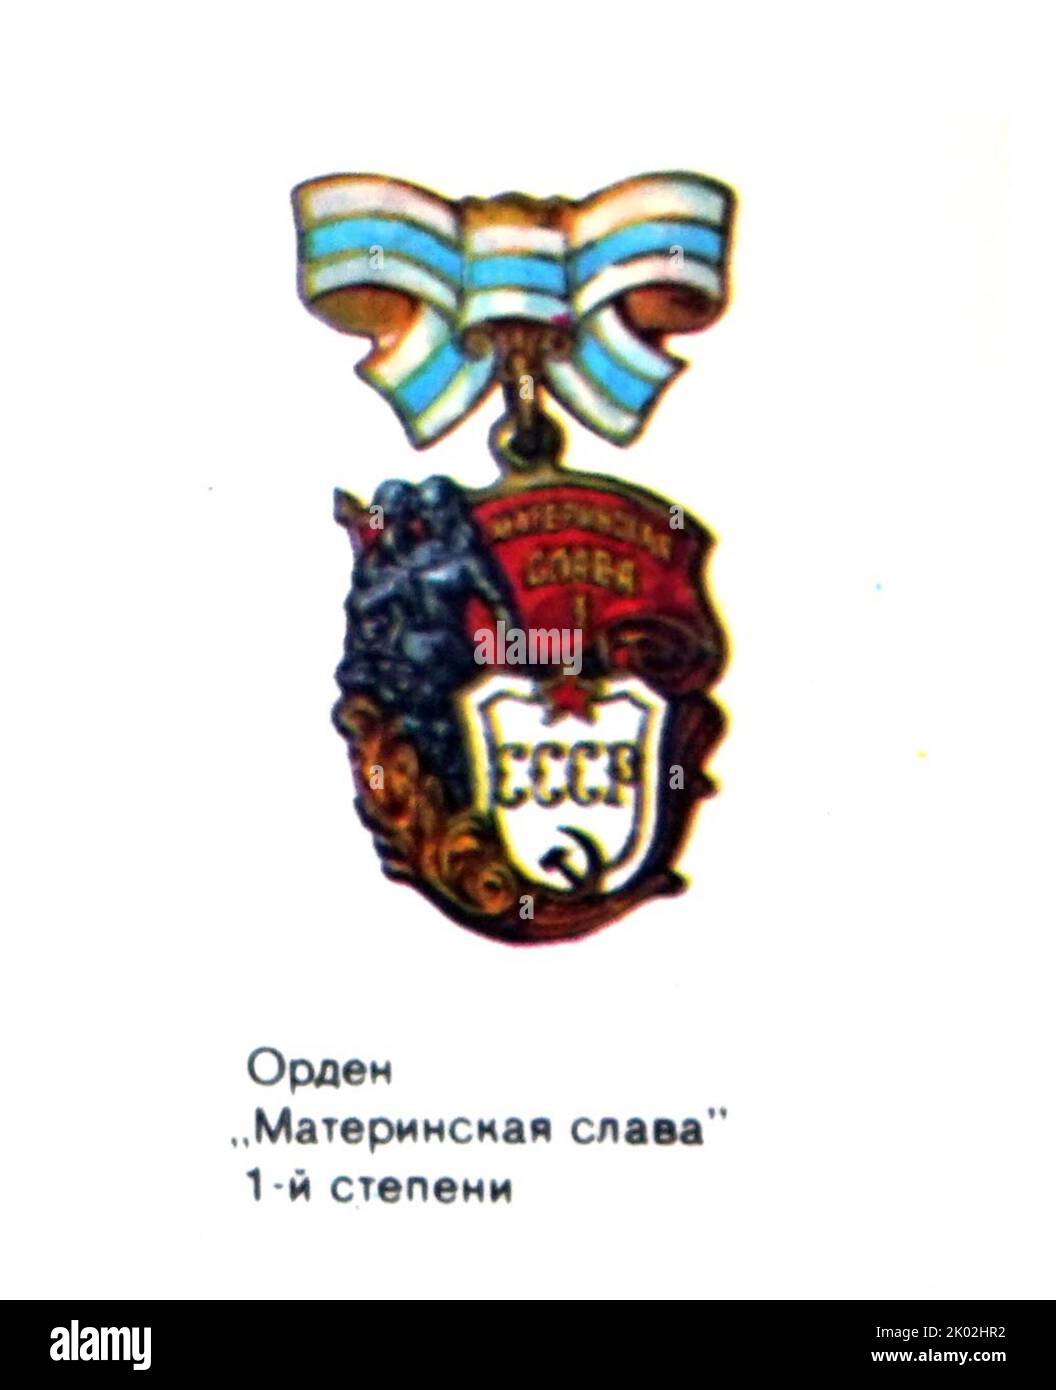 La médaille de gloire de la maternité au premier degré; Union soviétique 1980 Banque D'Images